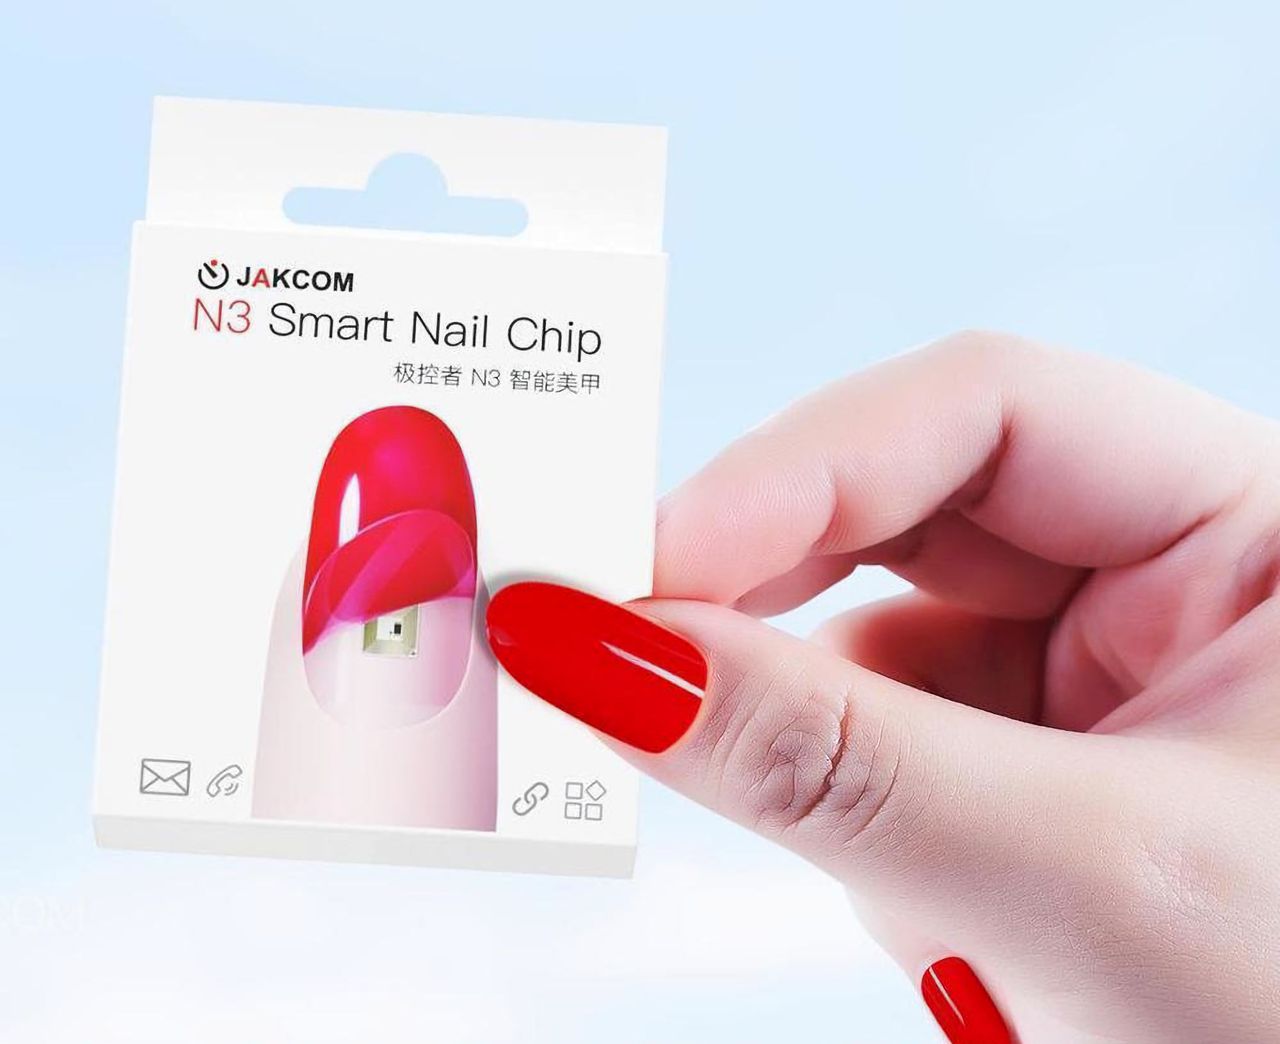 Jakcom N3 Smart Nail Chip. Tag NFC, który można umieścić pod lakierem do paznokci. Ma wiele zastosowań